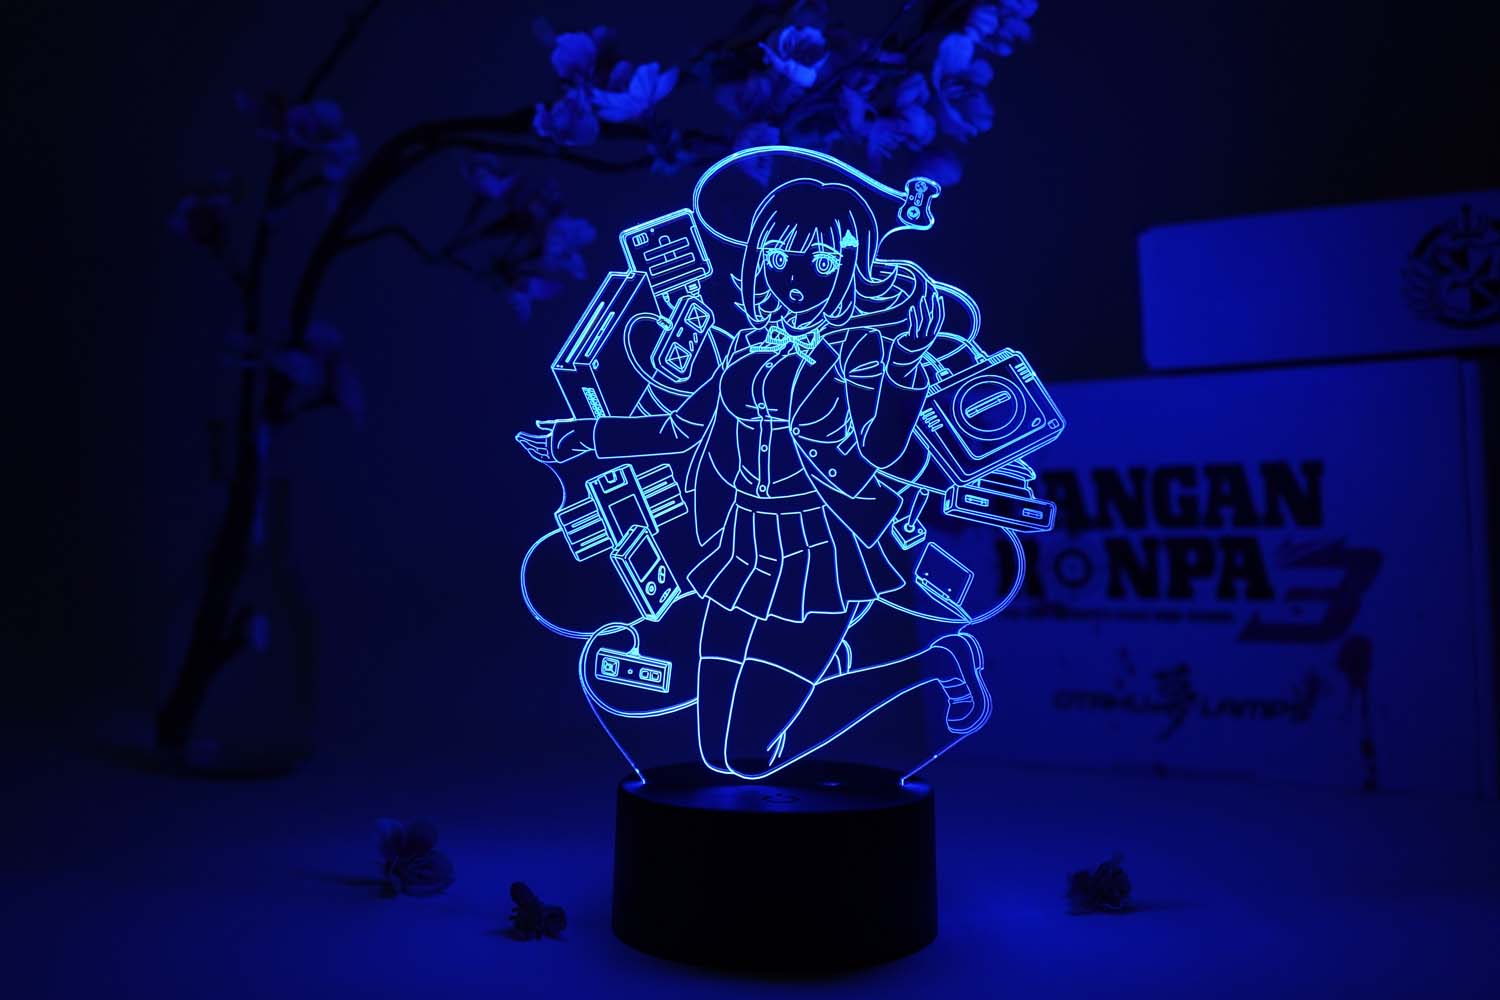 Chiaki Nanami Otaku Lamp (Danganronpa 3)